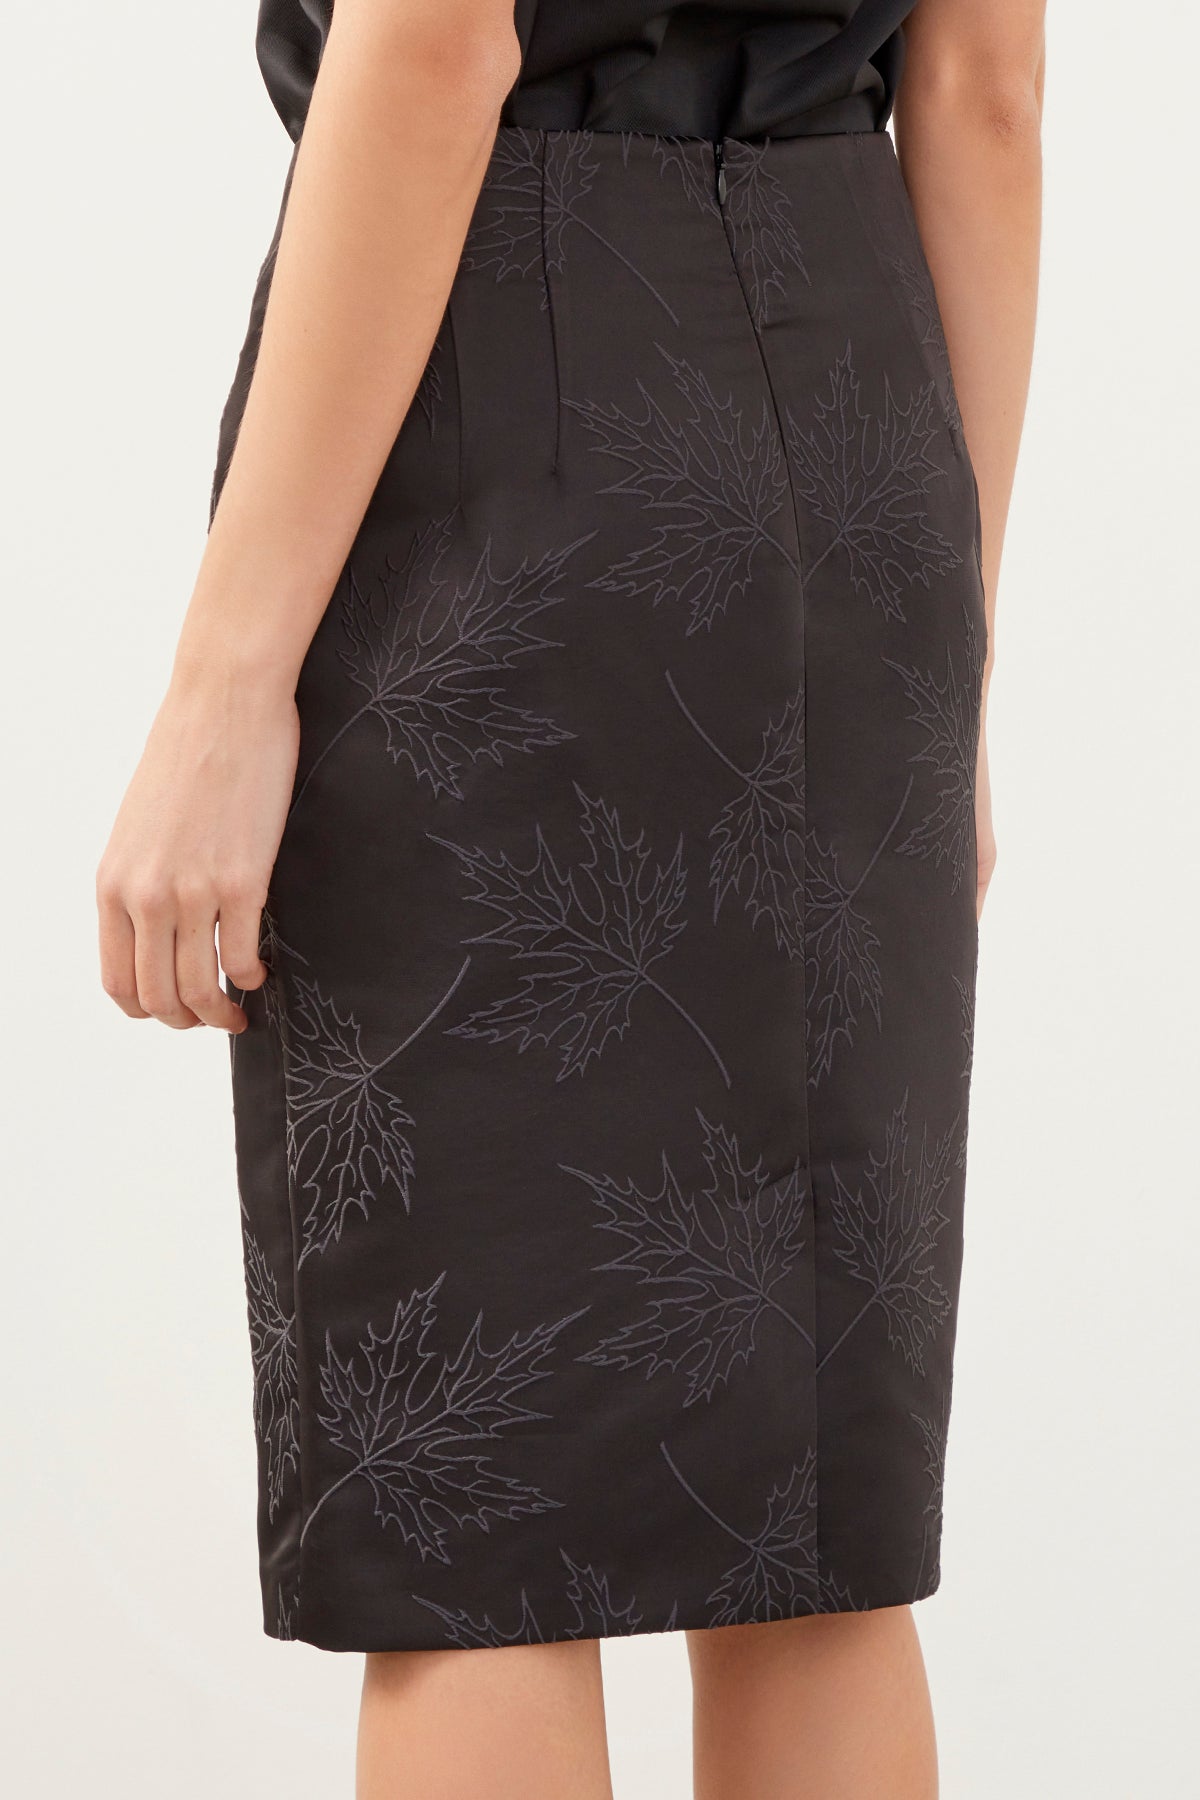 Black Leaf Patterned Stretch Mini Skirt